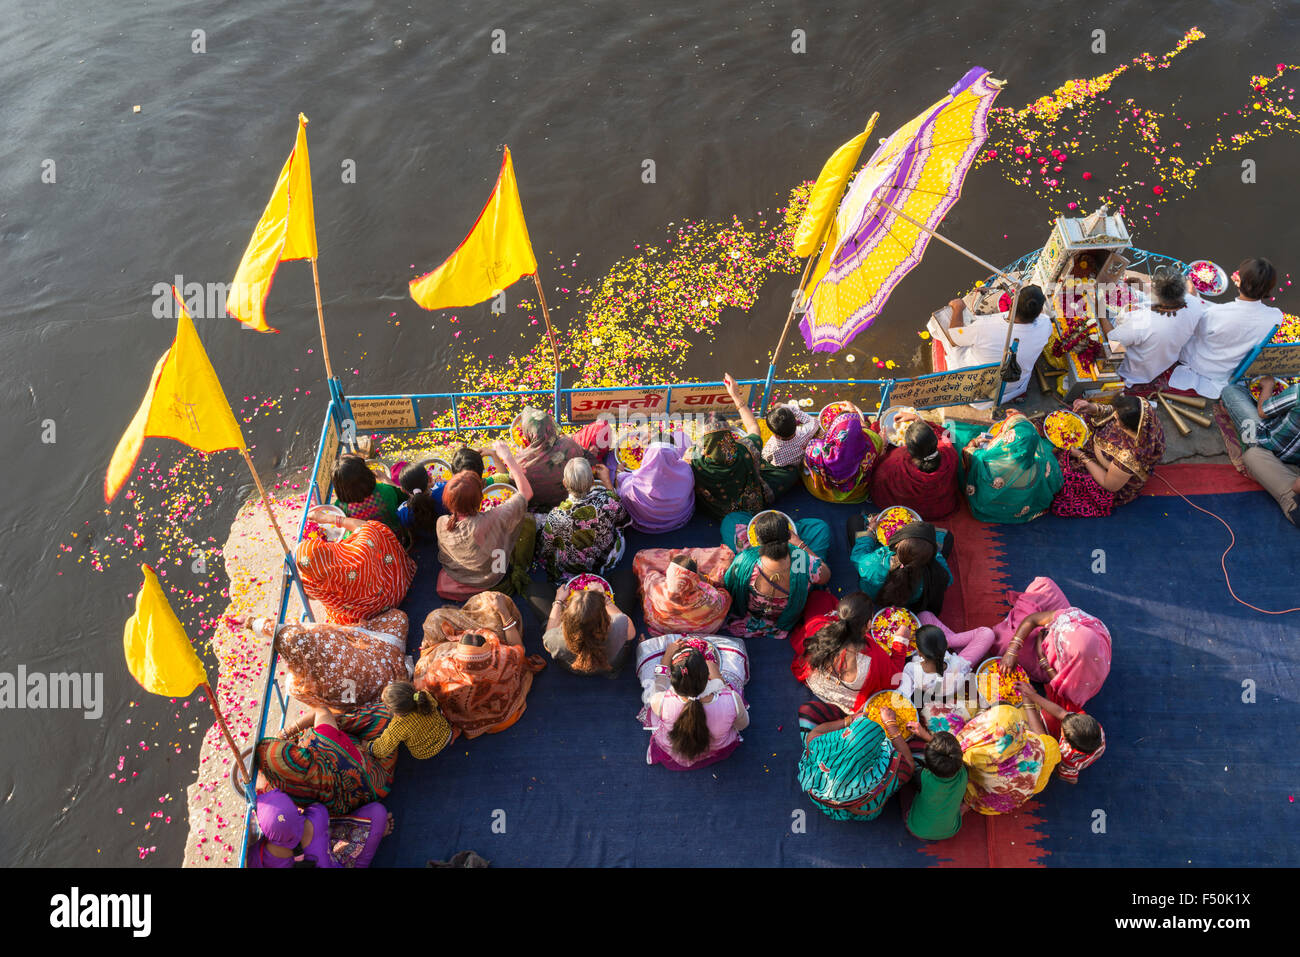 Einige weibliche Pilger, Frauen, feiern ein Ritual, Pooja, an den ghats am heiligen Fluss Yamuna, von oben gesehen Stockfoto